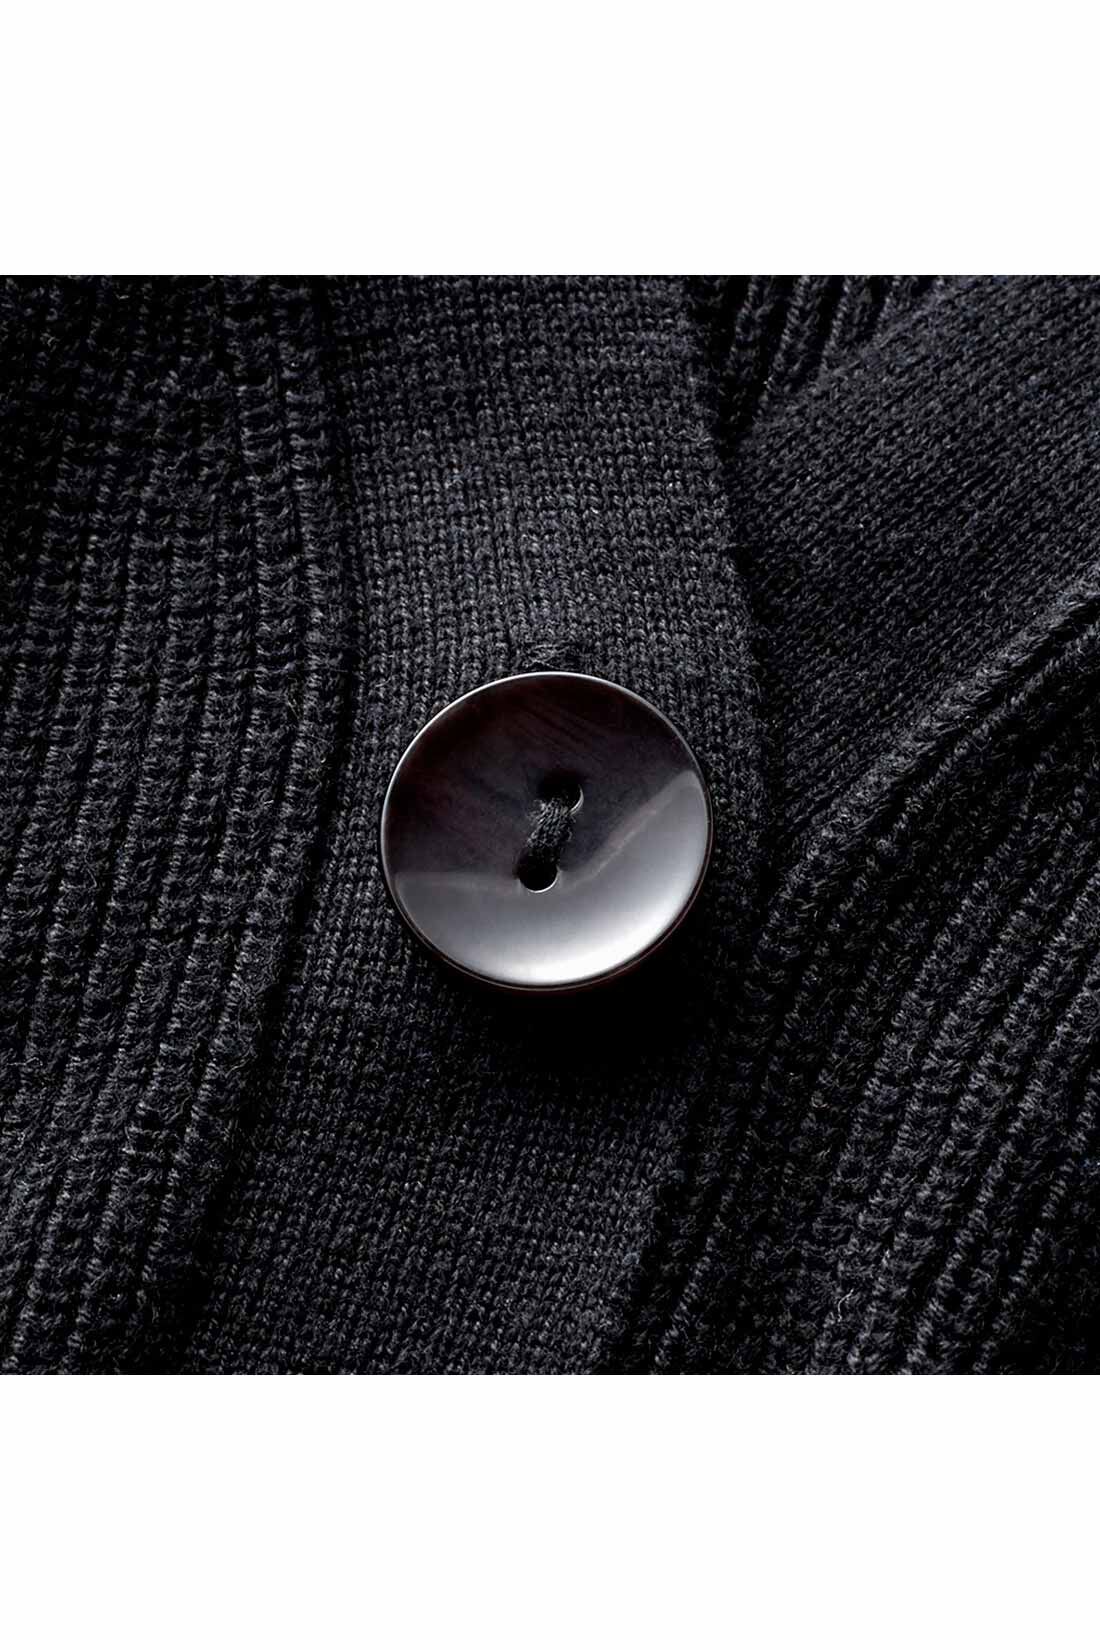 イディット|IEDIT[イディット]　大人上品なチェック柄ロングワンピースとカーディガンのこなれコーディネイトセット〈ブラック〉|コットン混カーデは12ゲージのあぜ編みで、ラフなこなれ感を表現。